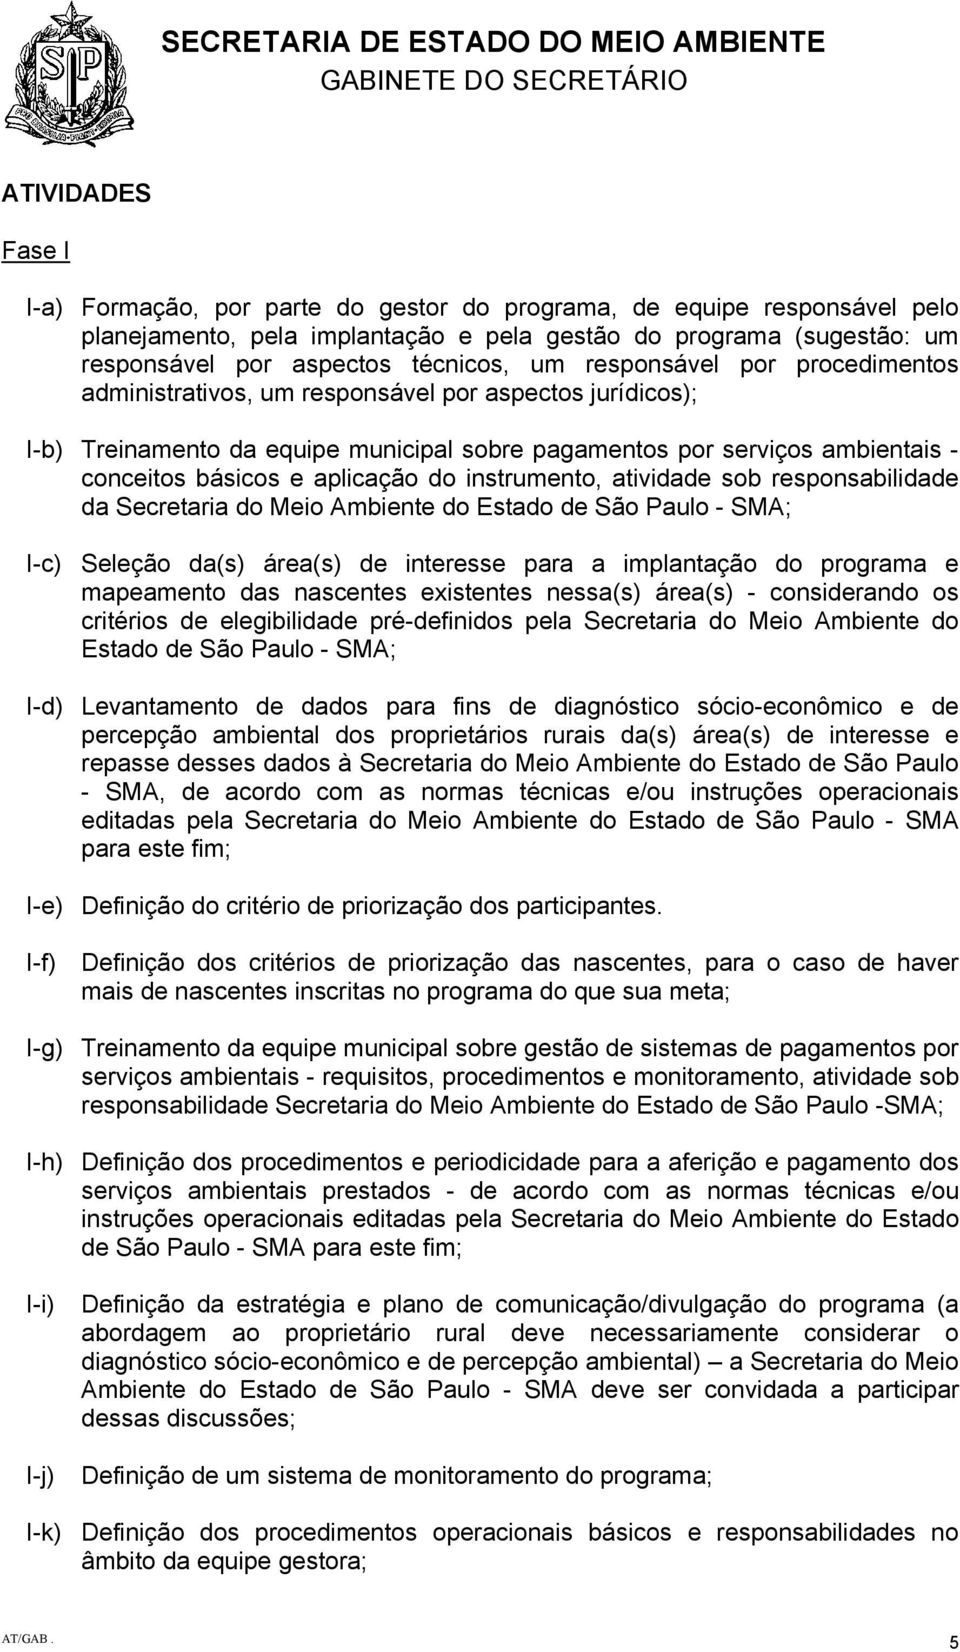 conceitos básicos e aplicação do instrumento, atividade sob responsabilidade da Secretaria do Meio Ambiente do Estado de São Paulo - SMA; I-c) Seleção da(s) área(s) de interesse para a implantação do